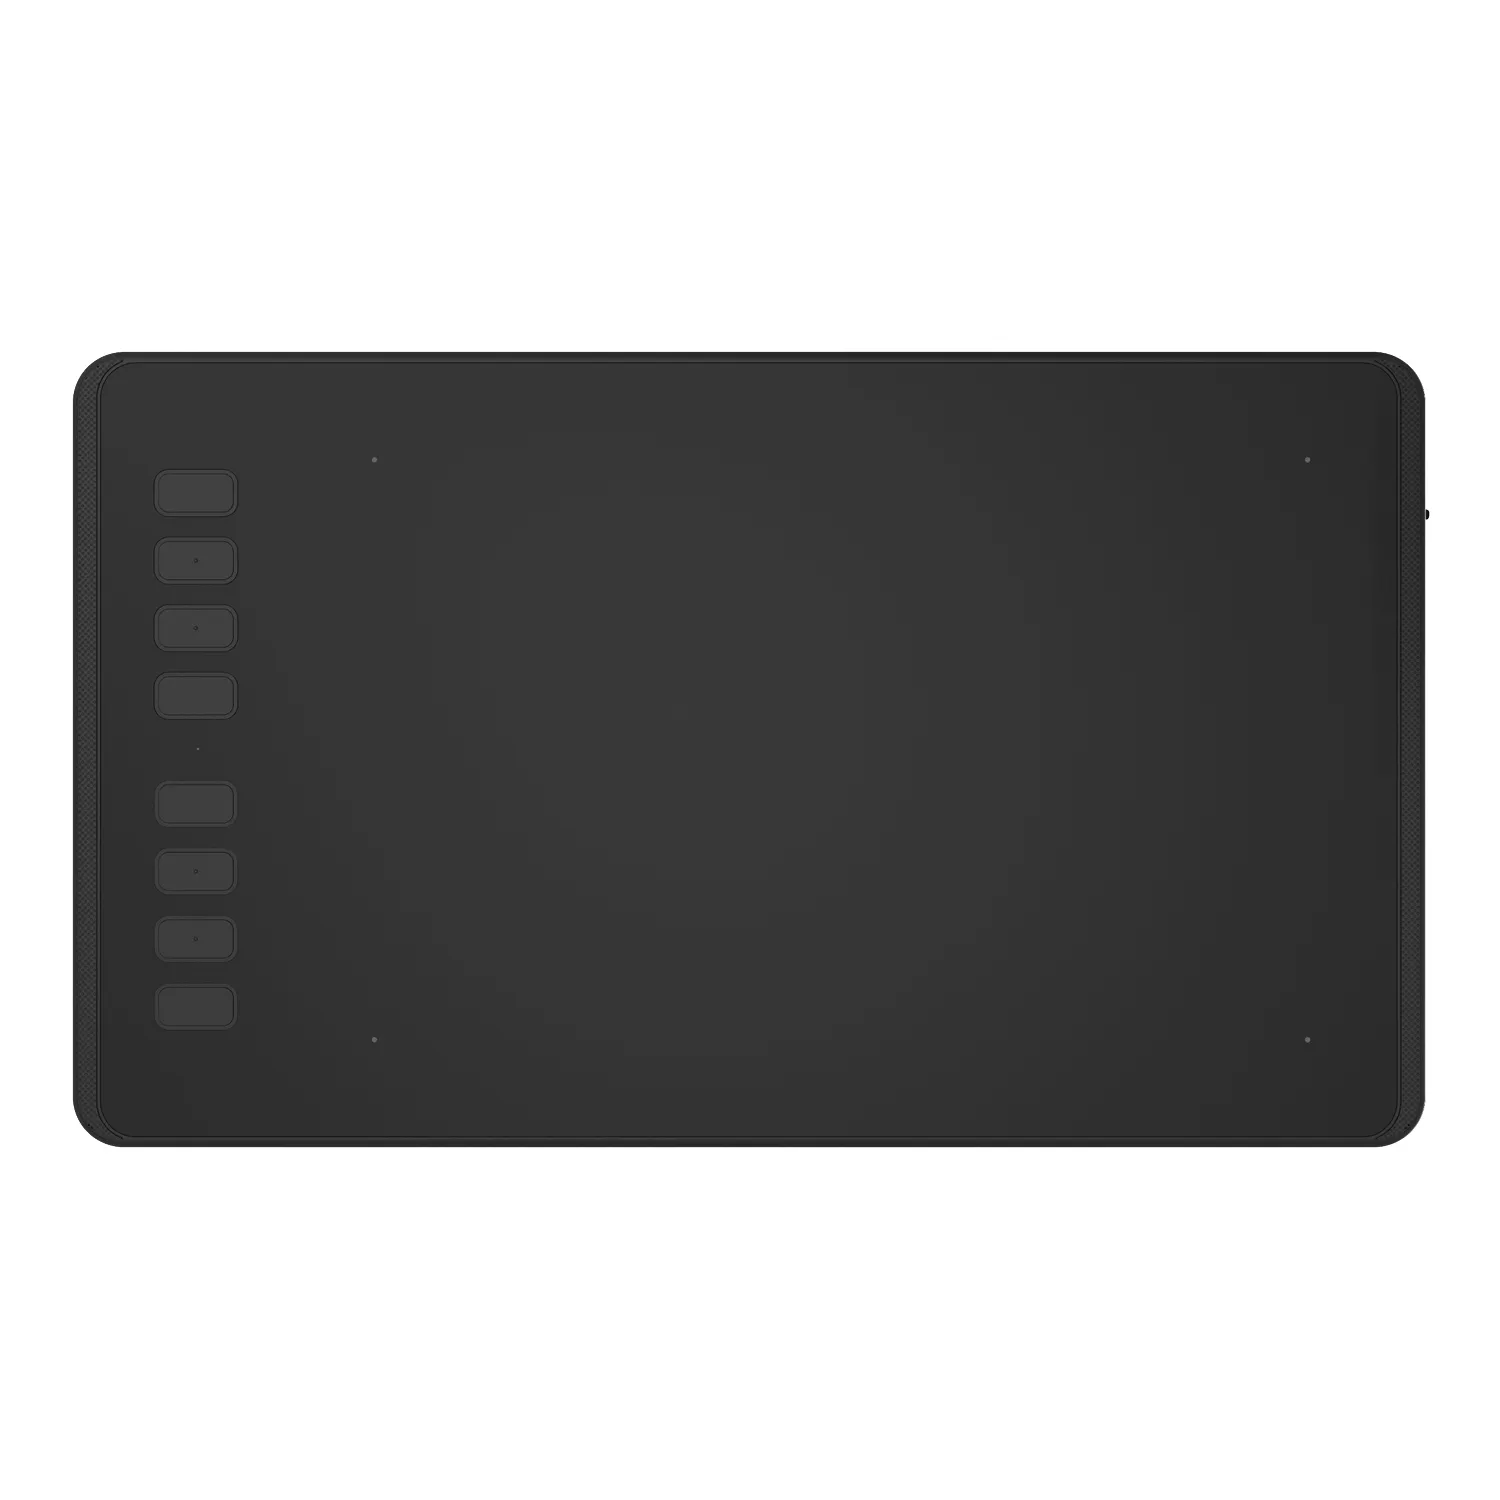 SHXZHUION-Tablette de dessin graphique H950P pour PC/ordinateur portable, stylo numérique interactif, animation tactile, vente express